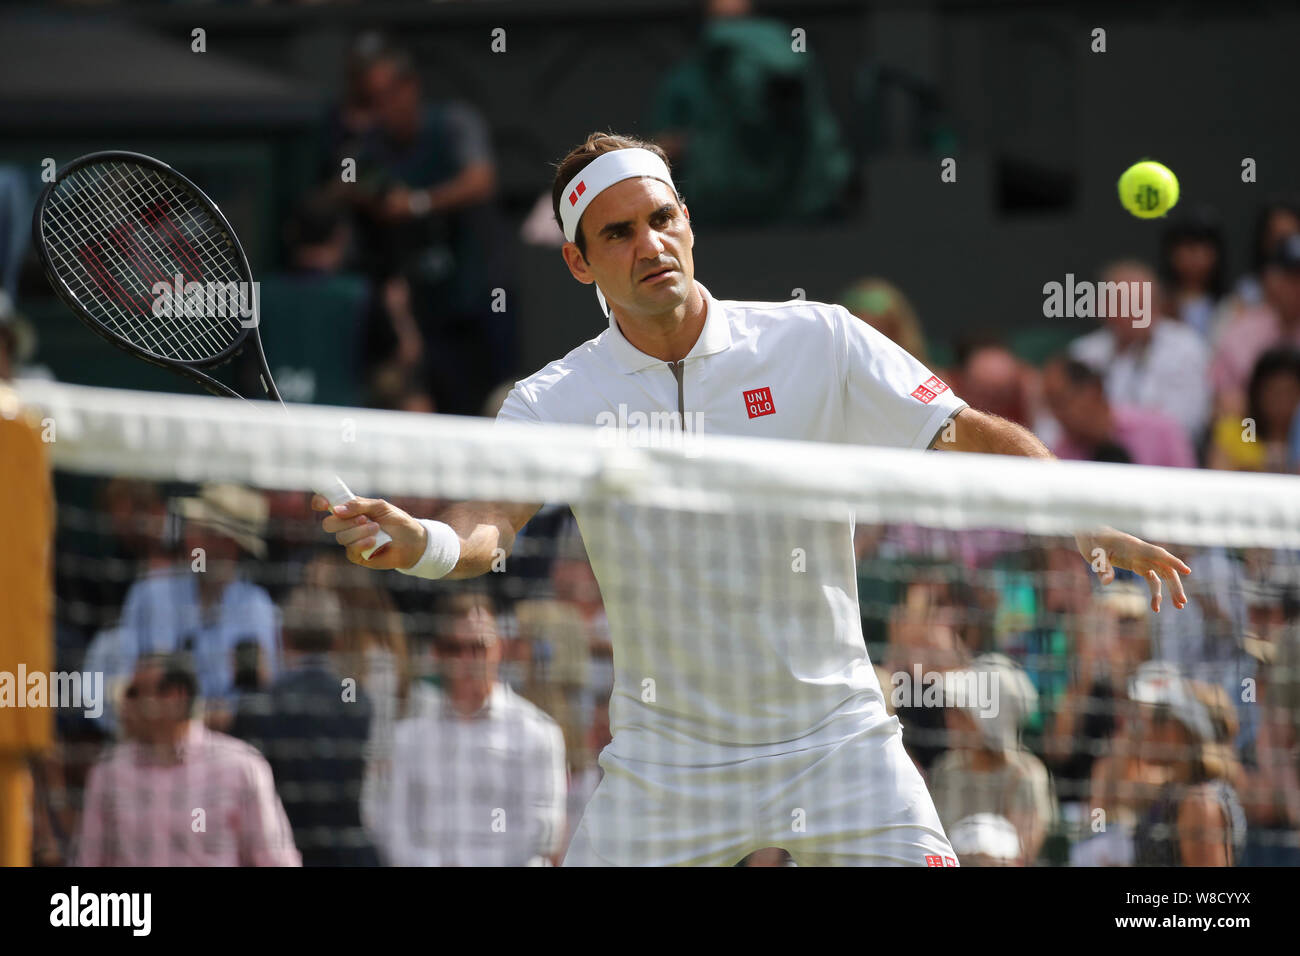 Schweizer Tennisspieler Roger Federer spielen Vorhand volley während 2019 Wimbledon Championships, London, England, Vereinigtes Königreich Stockfoto